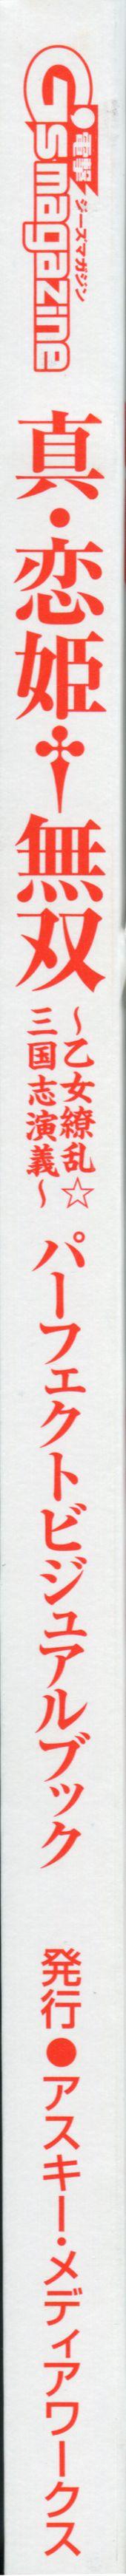 真・恋姫 無双―乙女繚乱☆三国志演義―パーフェクトビジュアルブック 268